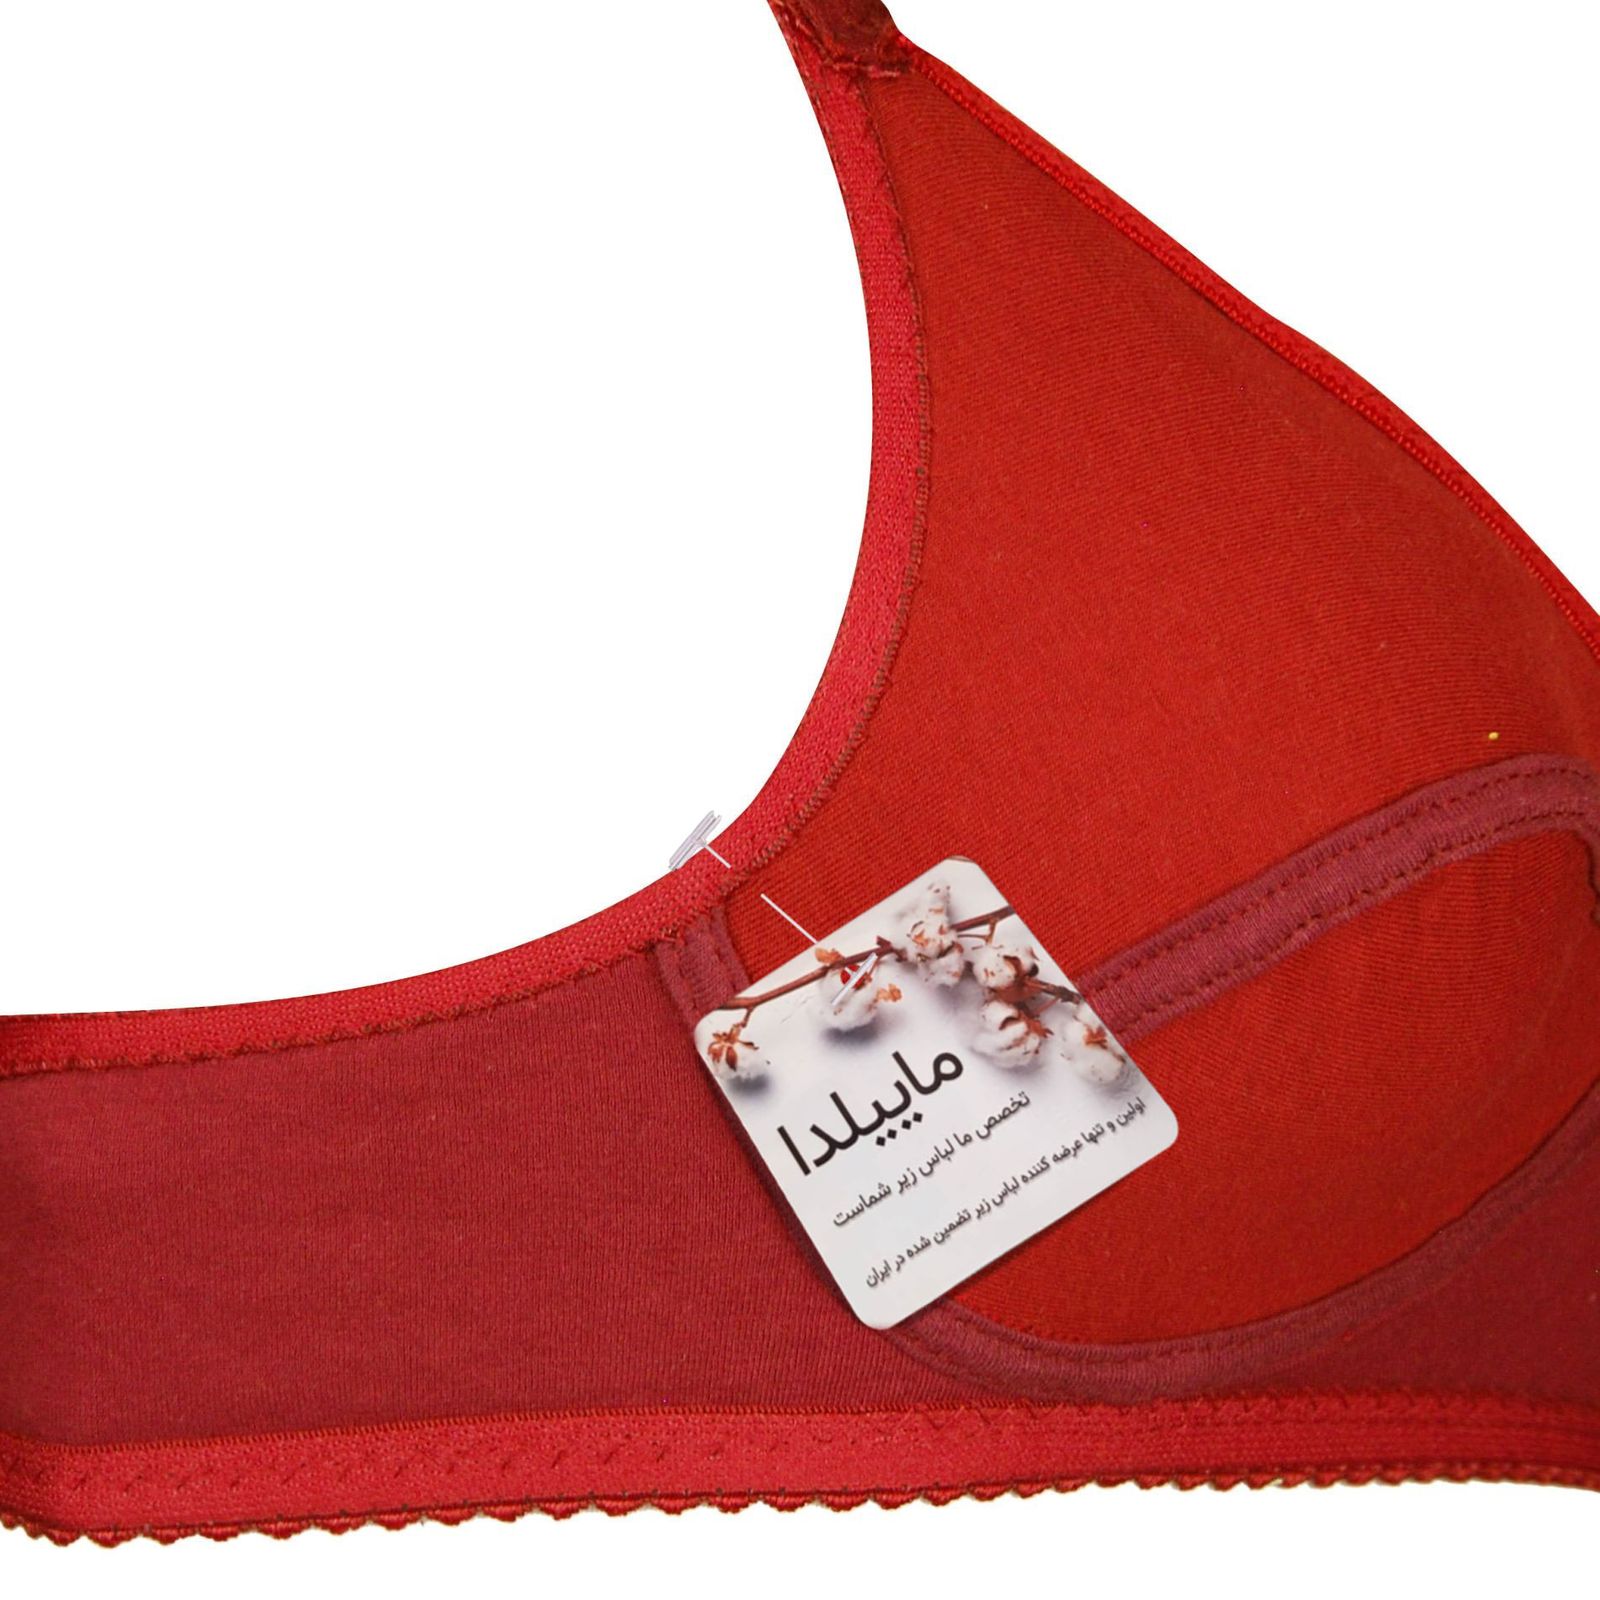 سوتین زنانه ماییلدا مدل 1131-6 رنگ قرمز -  - 4